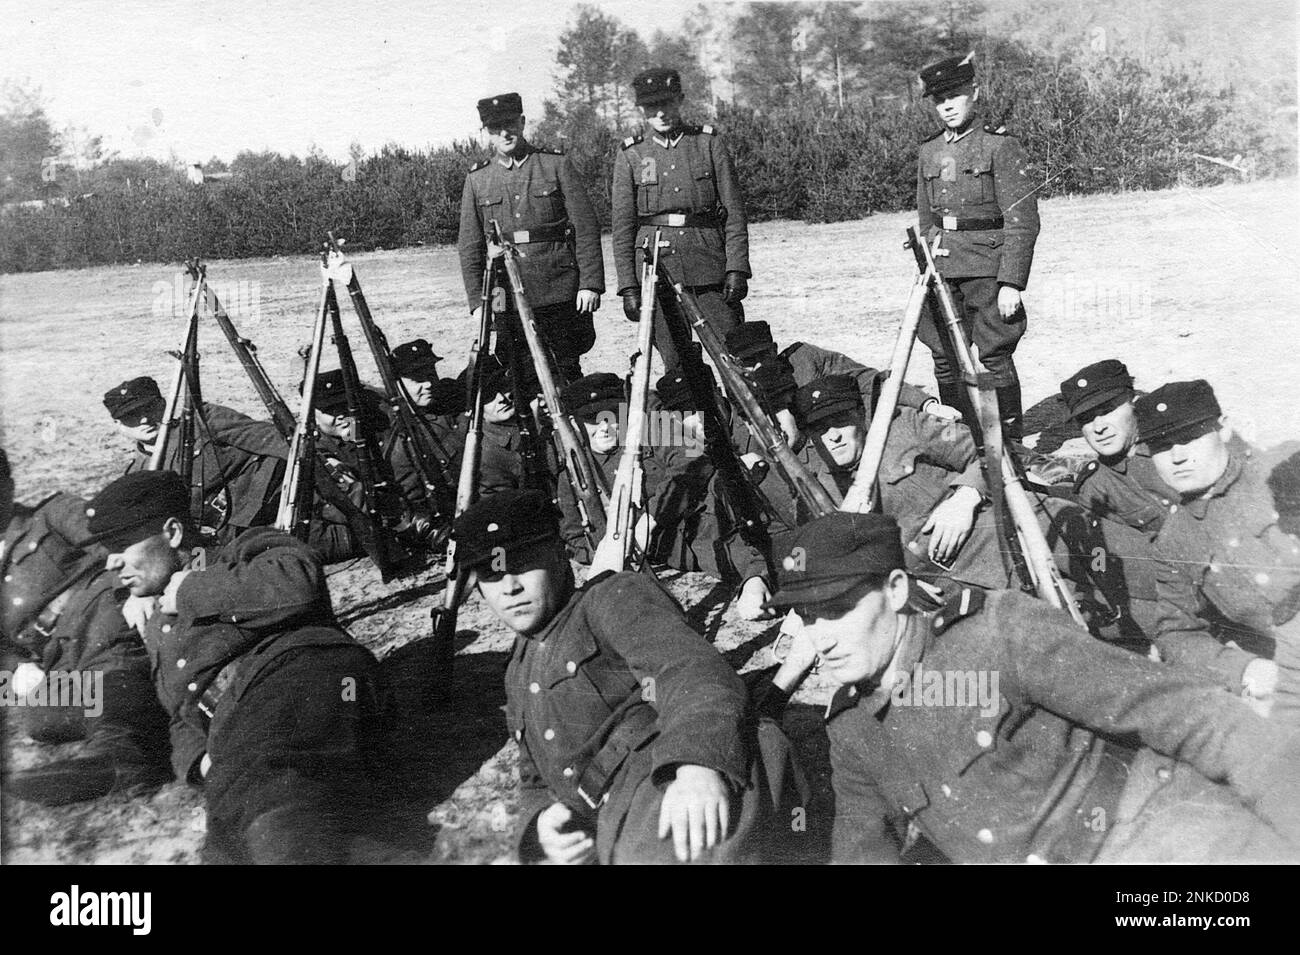 Foto delle guardie Trawniki a Sobibor, scattata nel 1943. Gli uomini Trawniki erano collaboratori nazisti dell'Europa centrale e orientale, costituiti da volontari o reclute provenienti da campi prigionieri di guerra. Foto Stock